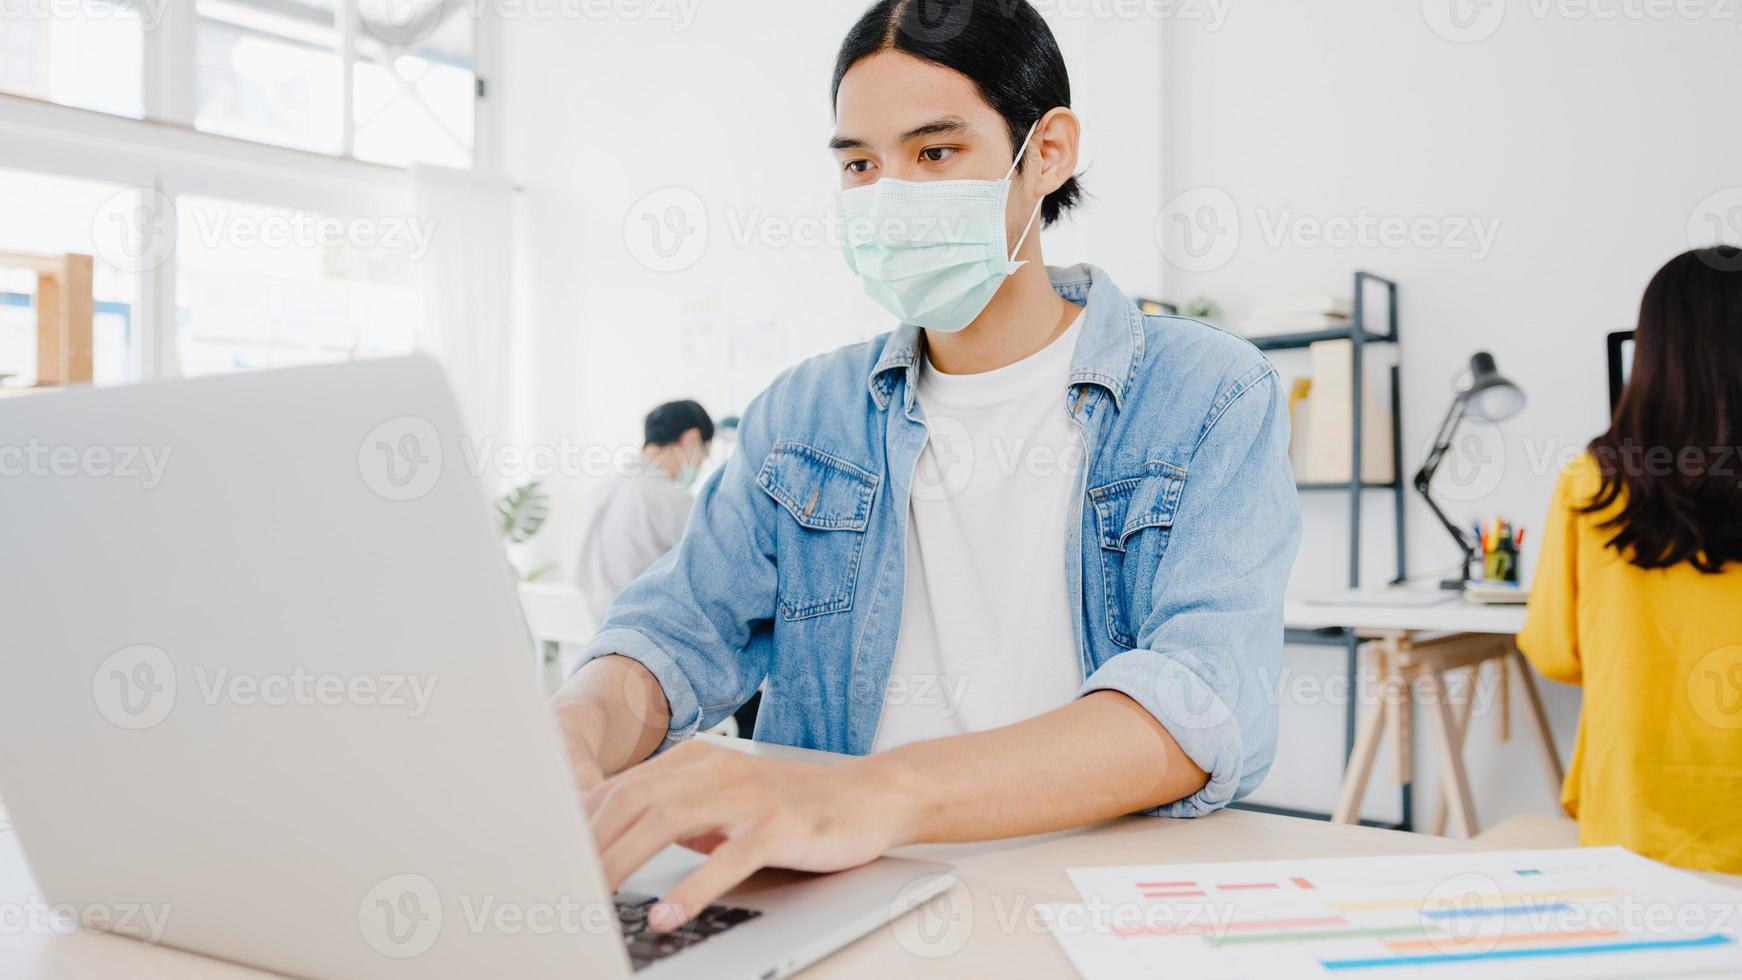 Asiatischer Geschäftsmann, der eine medizinische Gesichtsmaske für soziale Distanzierung in einer neuen normalen Situation zur Virusprävention trägt, während er den Laptop wieder bei der Arbeit im Büro verwendet. Lebensstil nach dem Corona-Virus. foto